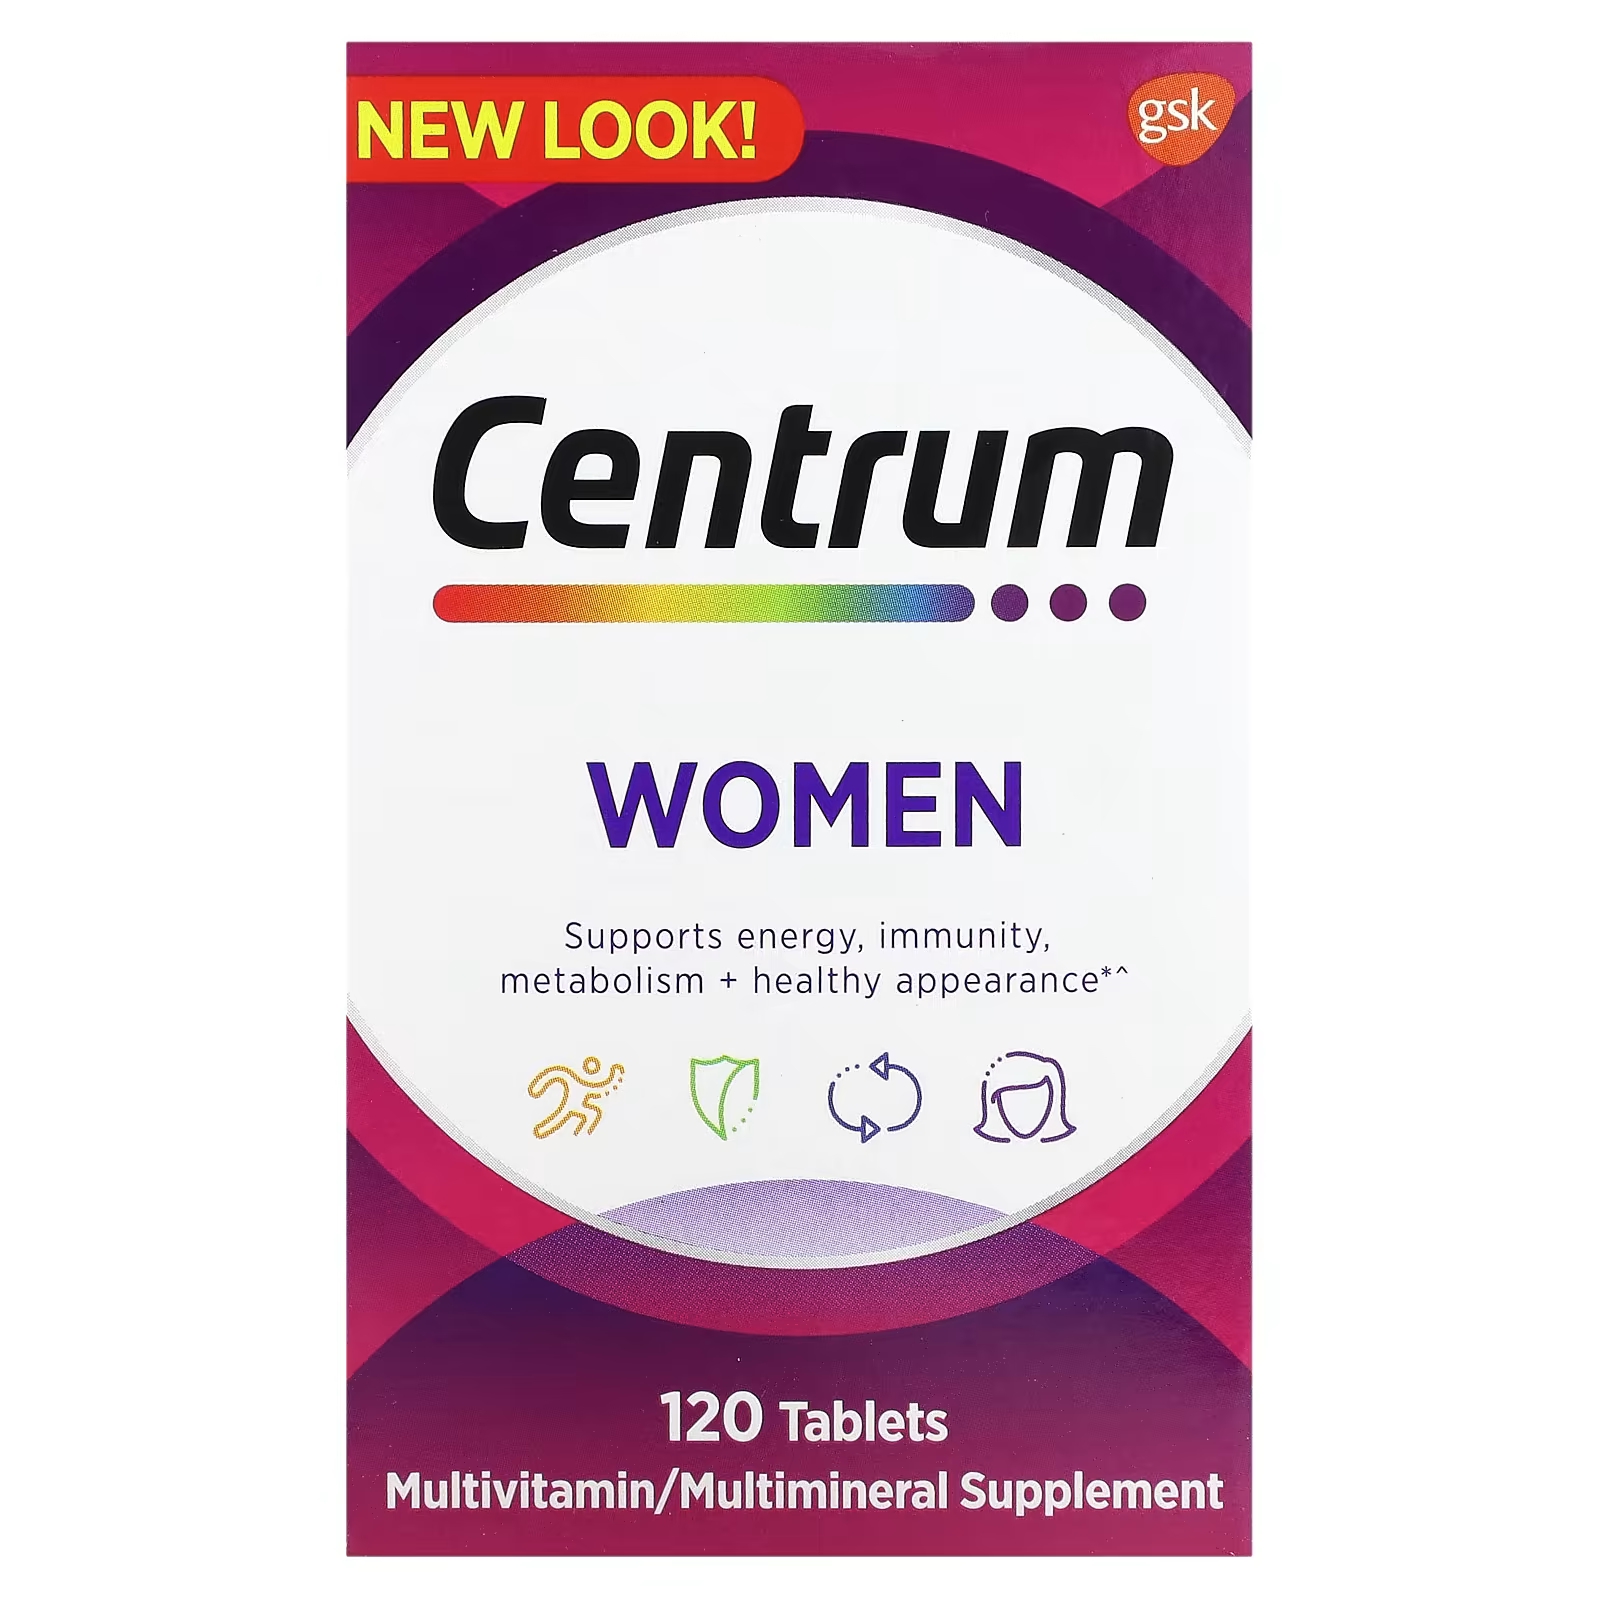 Мультивитамины женские Centrum, 120 таблеток мультивитамины centrum silver women s multivitamin supplement 2 упаковки по 65 таблеток